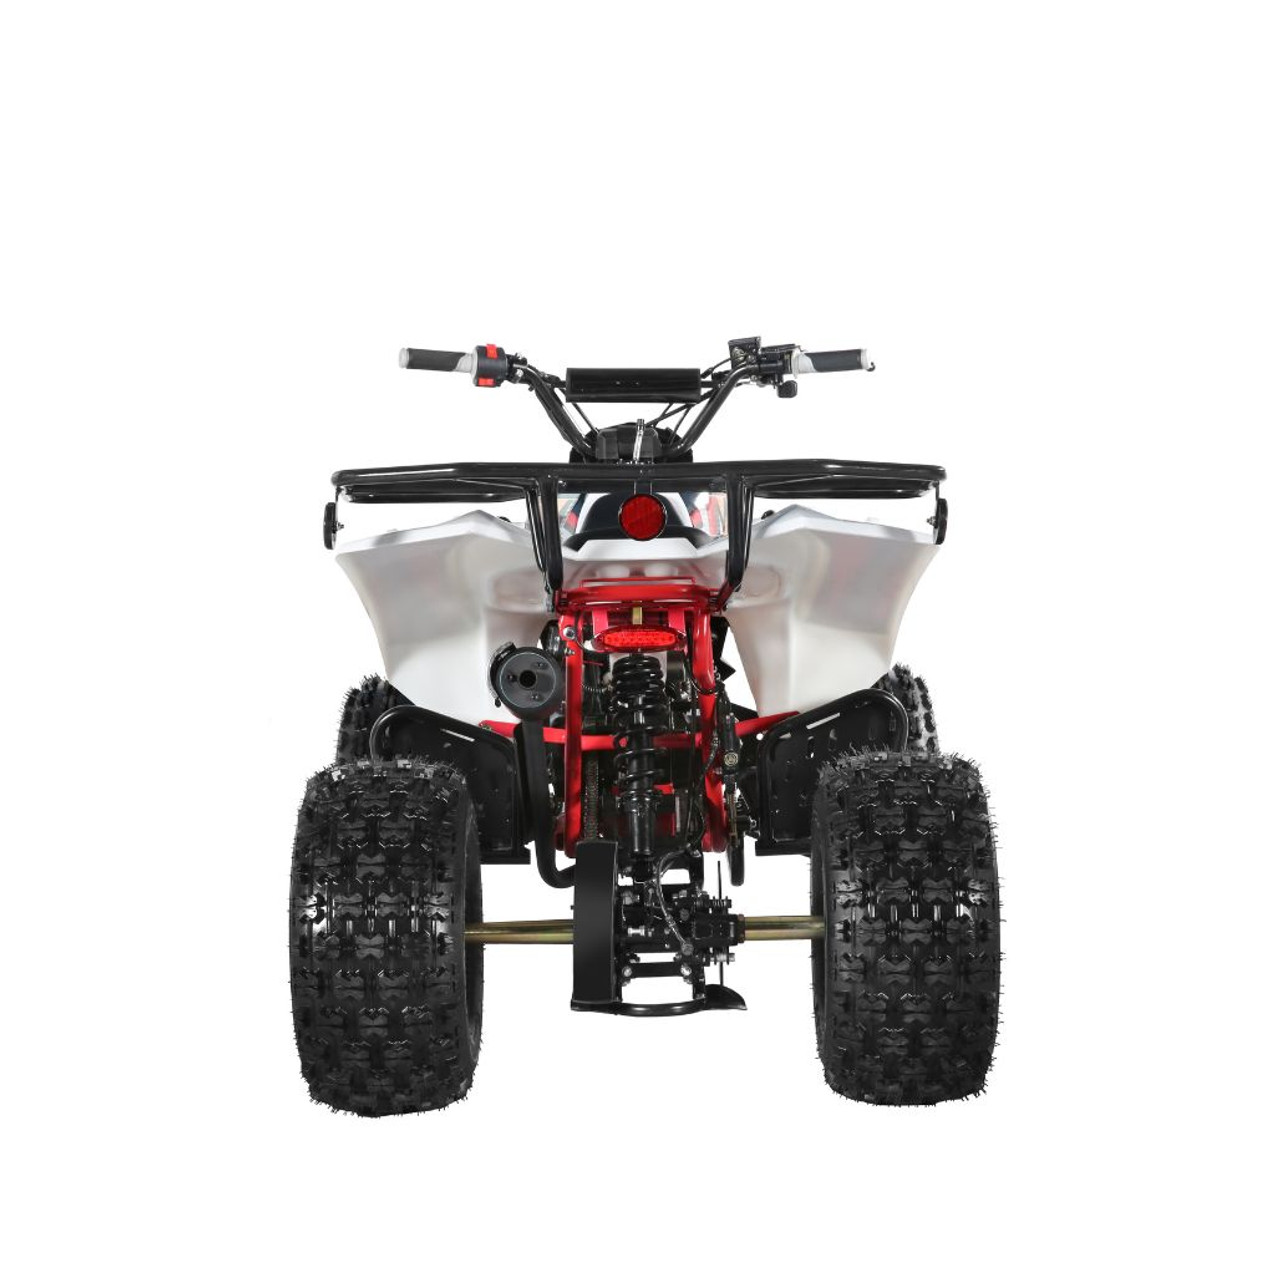 TrailMaster C125 125cc Sport ATV (TM-C125)